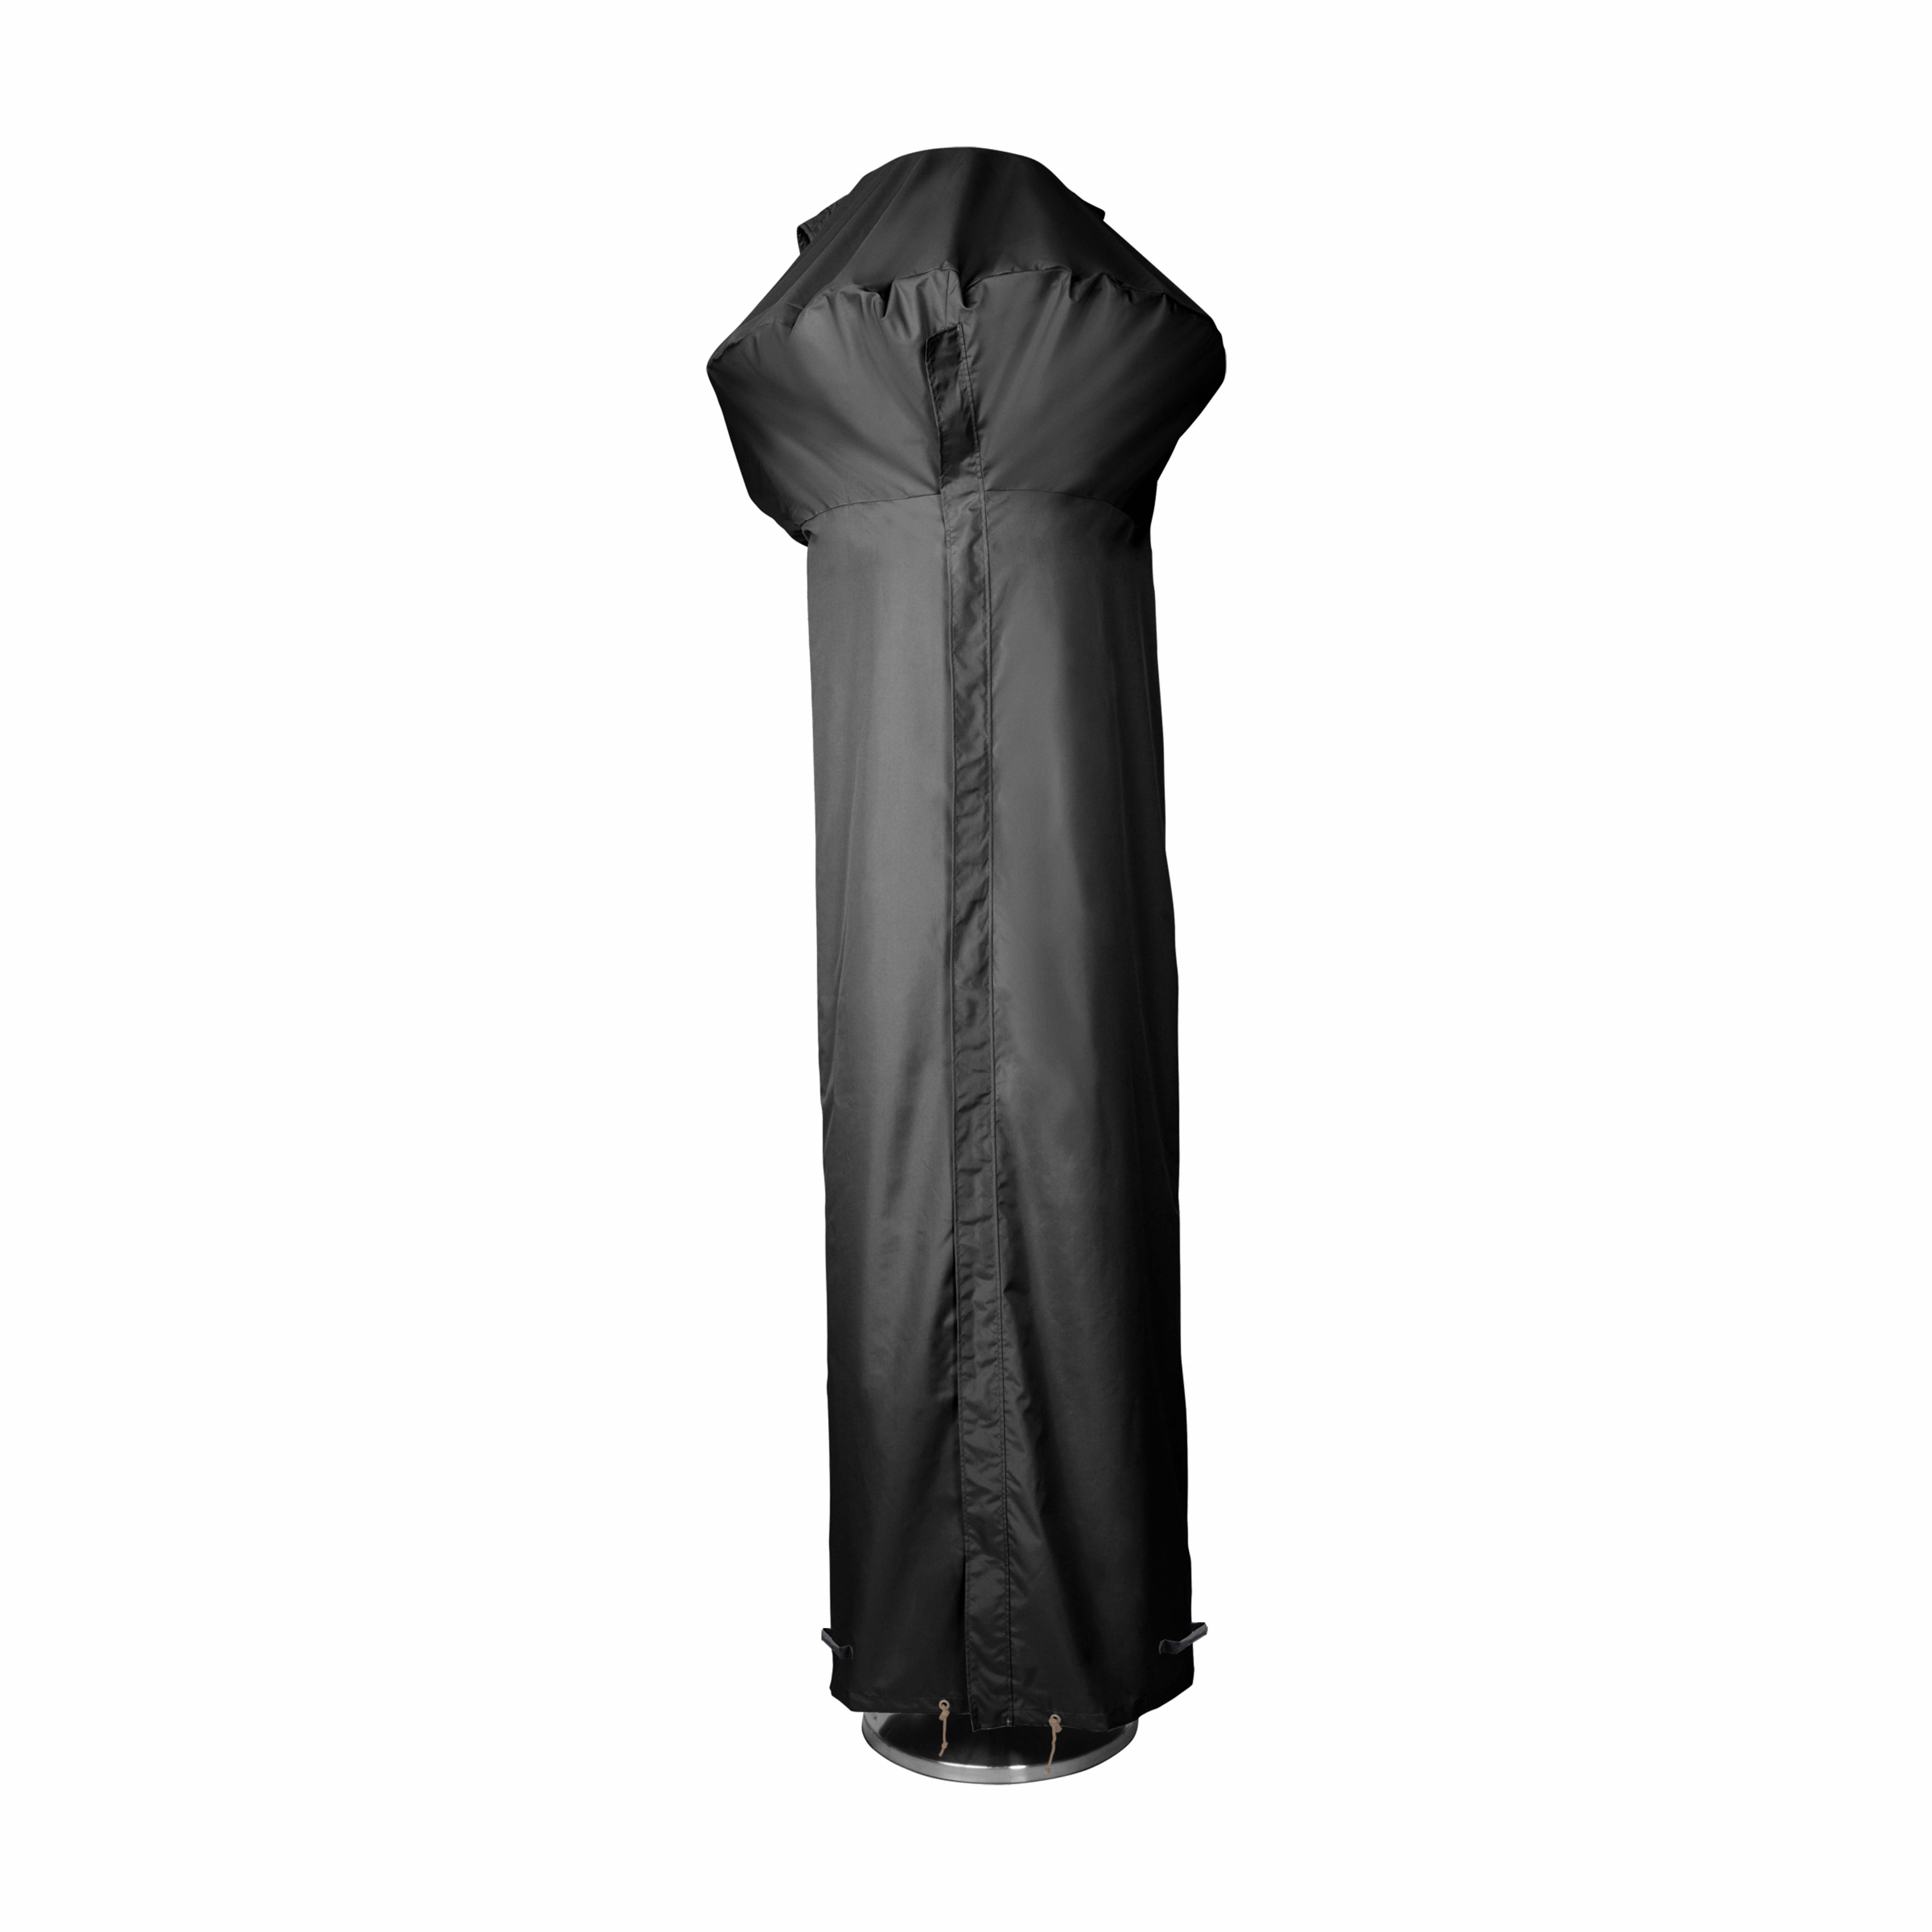 Housse de protection pour parasol chauffante en polyester